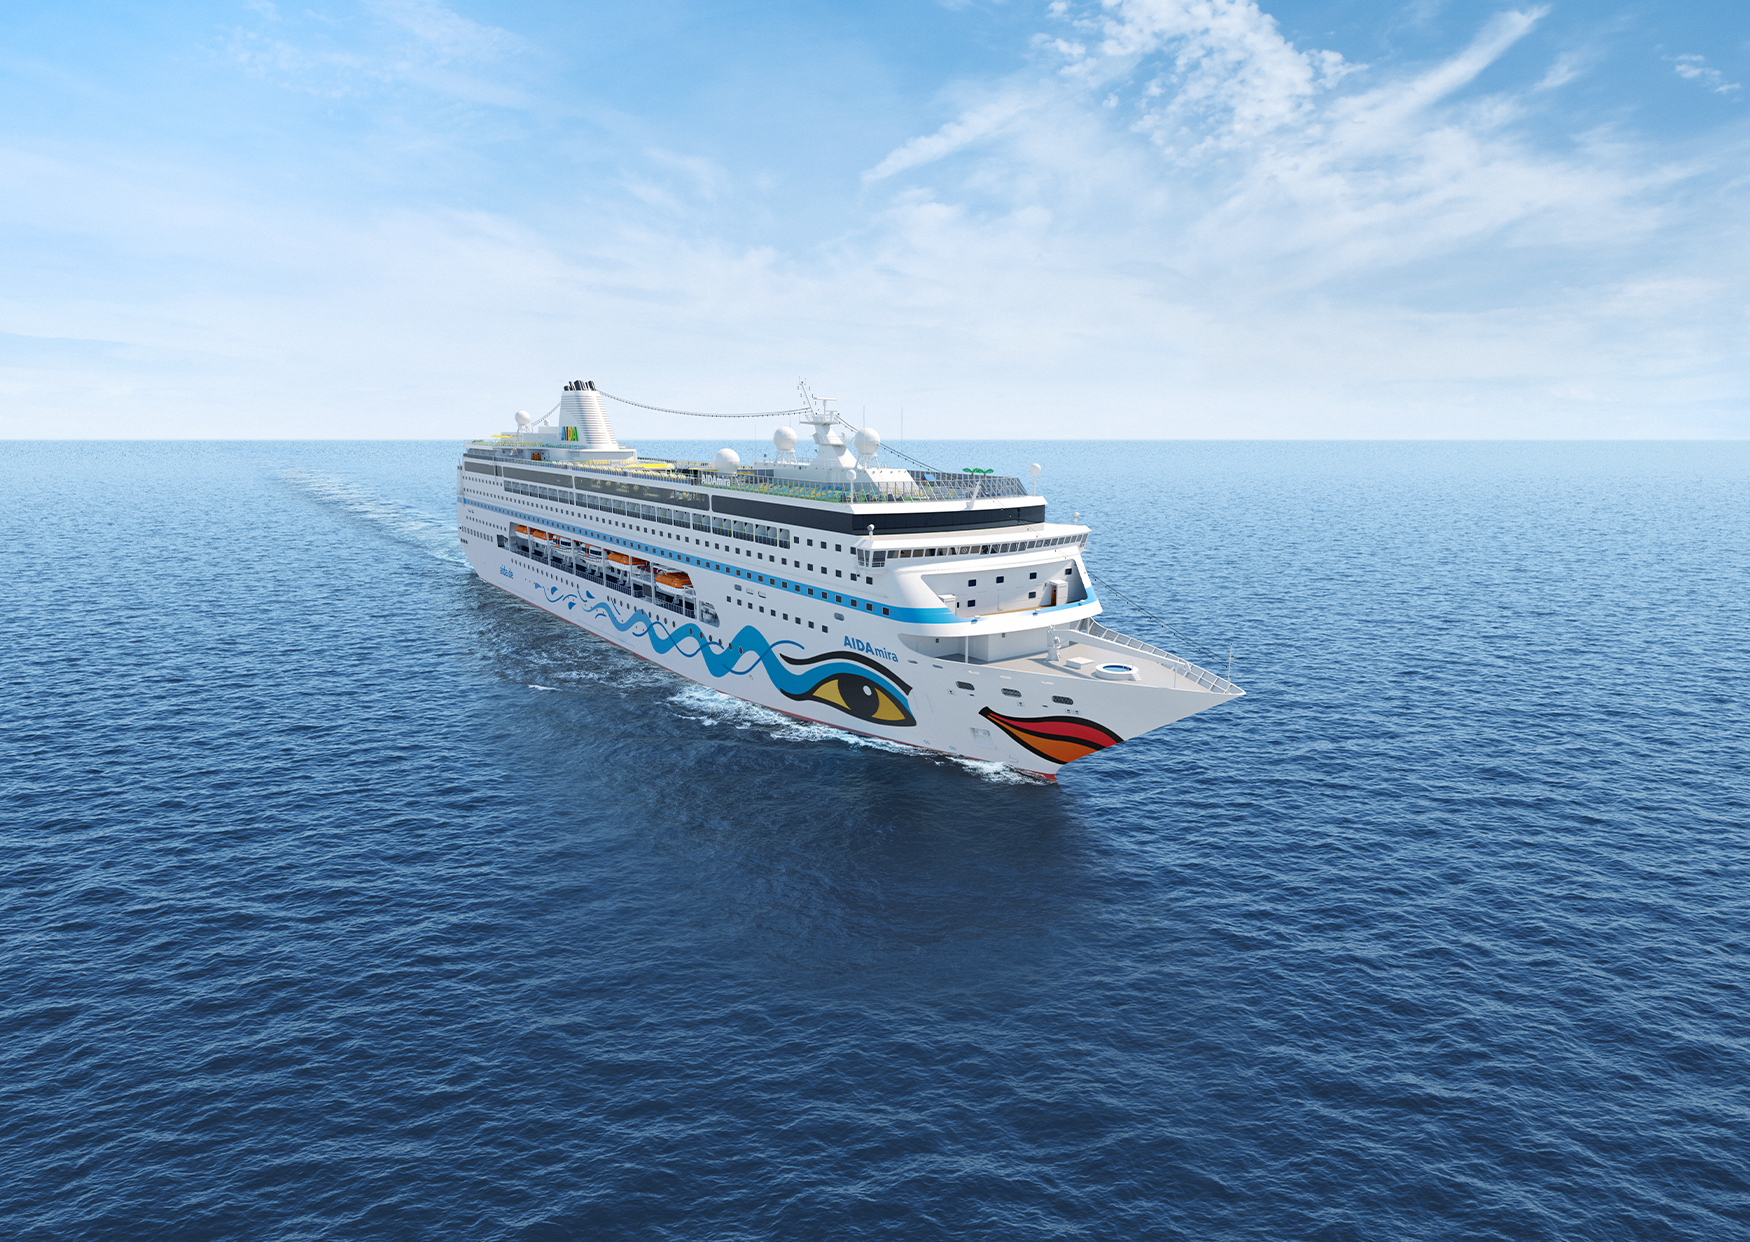 Am 30. November 2019 wird das Kreuzfahrtschiff AIDAmira offiziell in die AIDA Flotte aufgenommen. Noch bevor das neue Selection-Schiff Kurs auf Südafrika nimmt, können Gäste AIDAmira auf einer exklusiven 4-tägigen Reise im Mittelmeer kennenlernen.